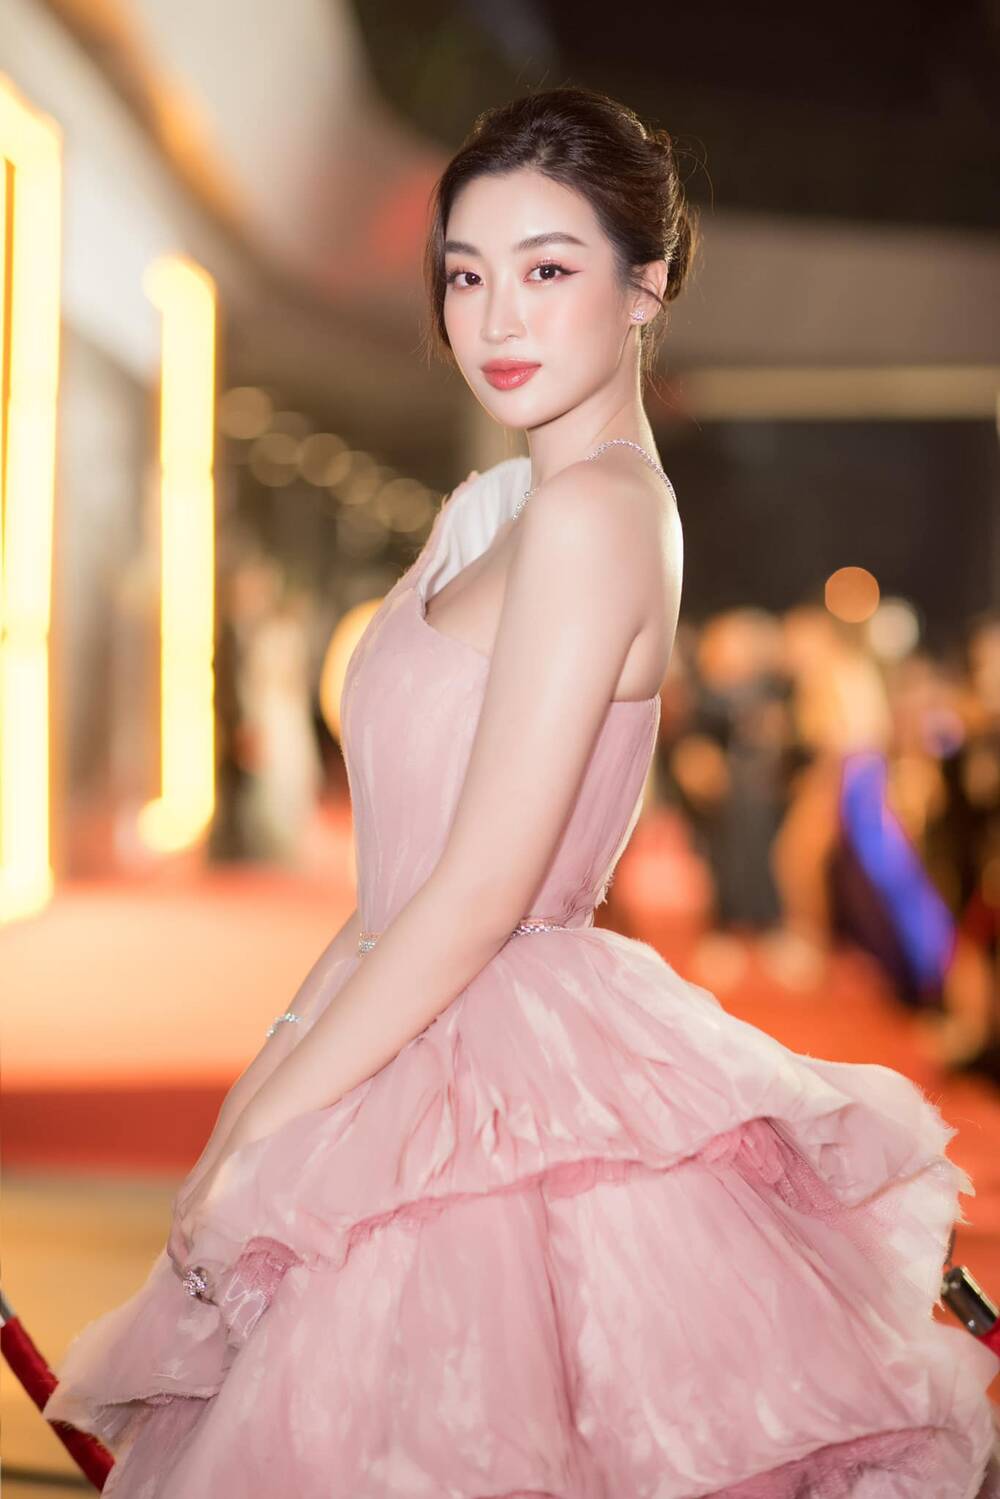 Cô chọn một thiết kế đầm lệch vai của NTK Minh Tuấn. Chiếc váy màu hồng pastel giúp tôn lên làn da trắng trẻo của Hoa hậu